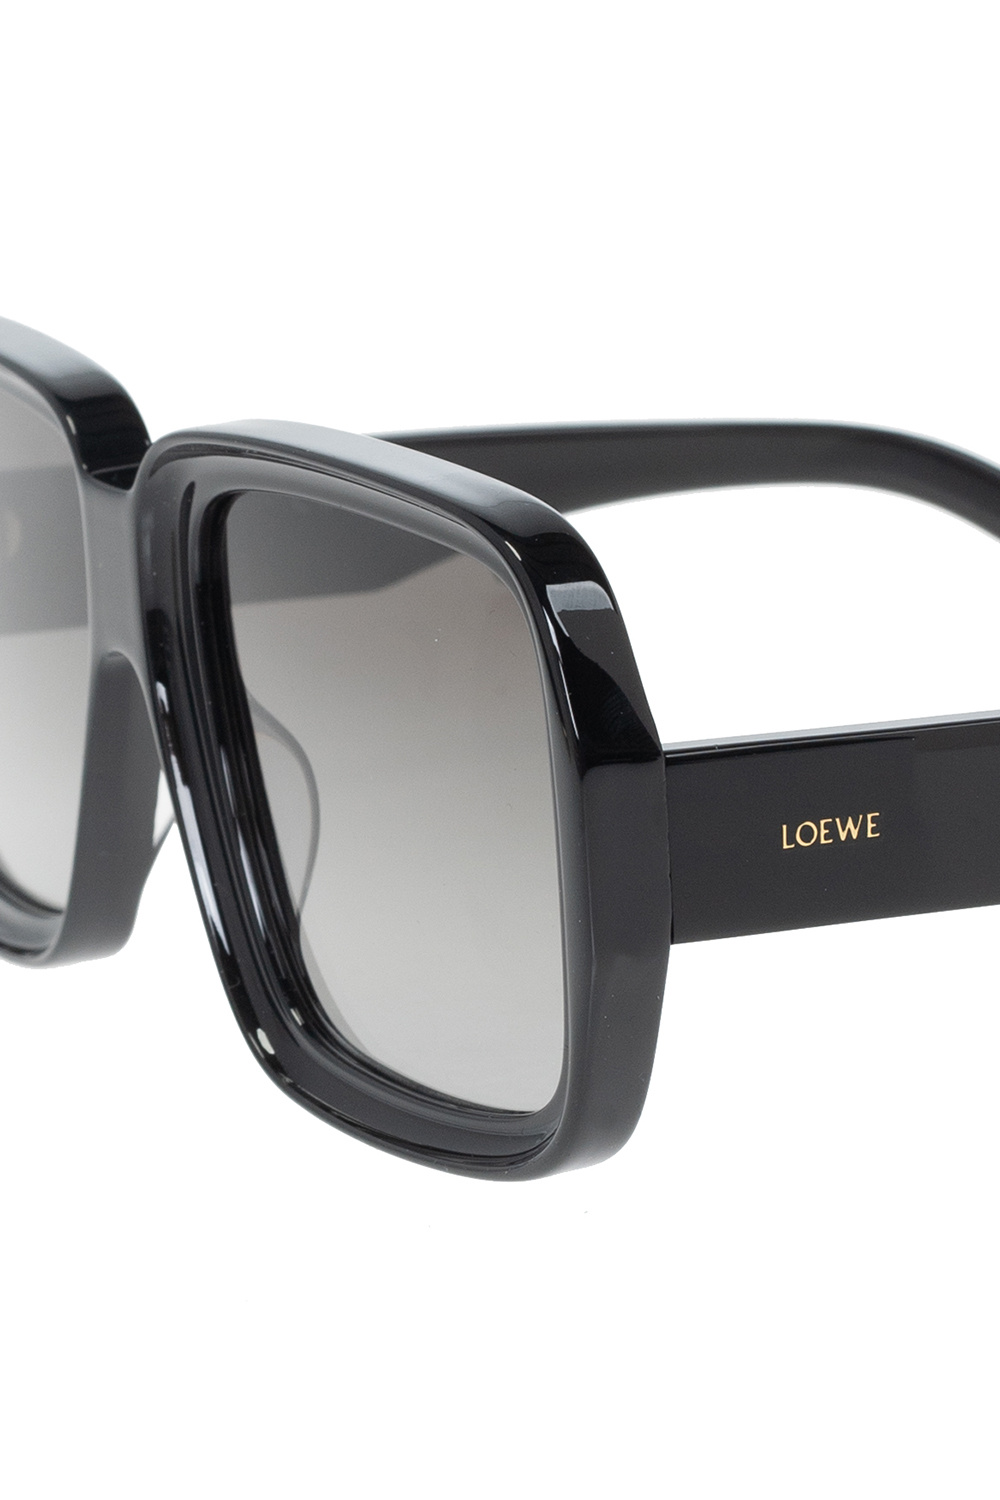 Loewe Siroko K3 Dark Photochromic HUGO sunglasses